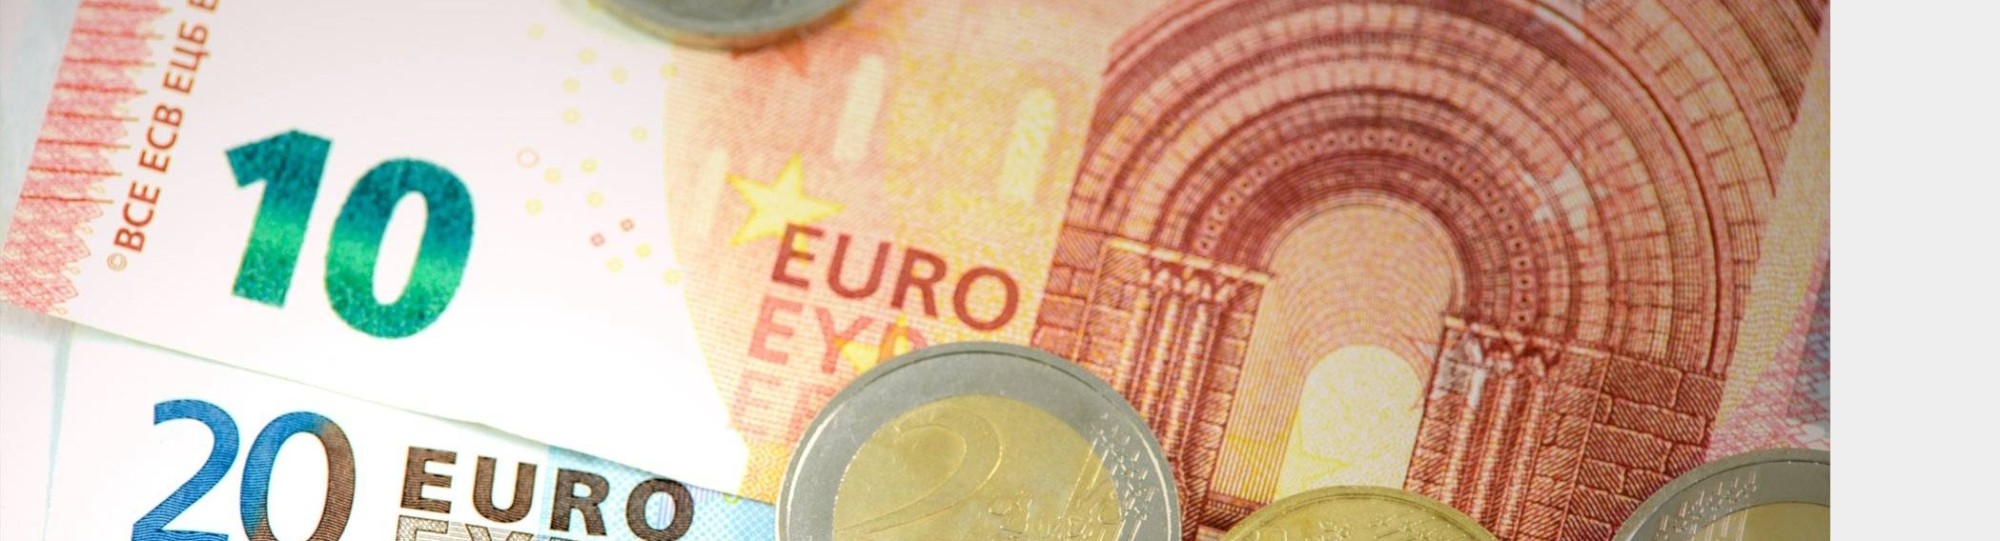 218707 #50euroweek briefgeld euro budget